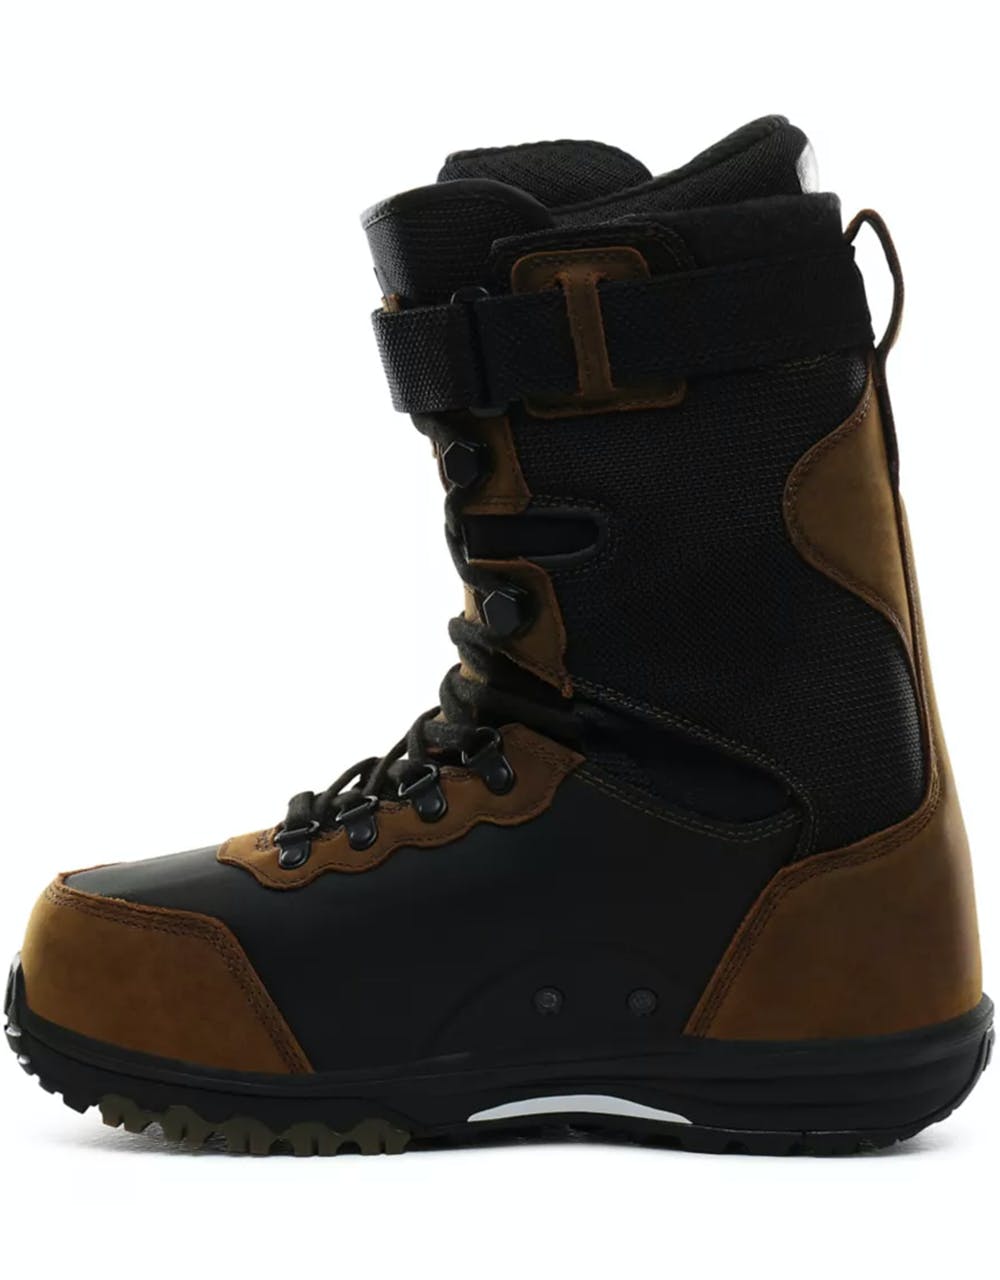 Vans Infuse 2020 Snowboard Boots - (Pat Moore) Brown/Black